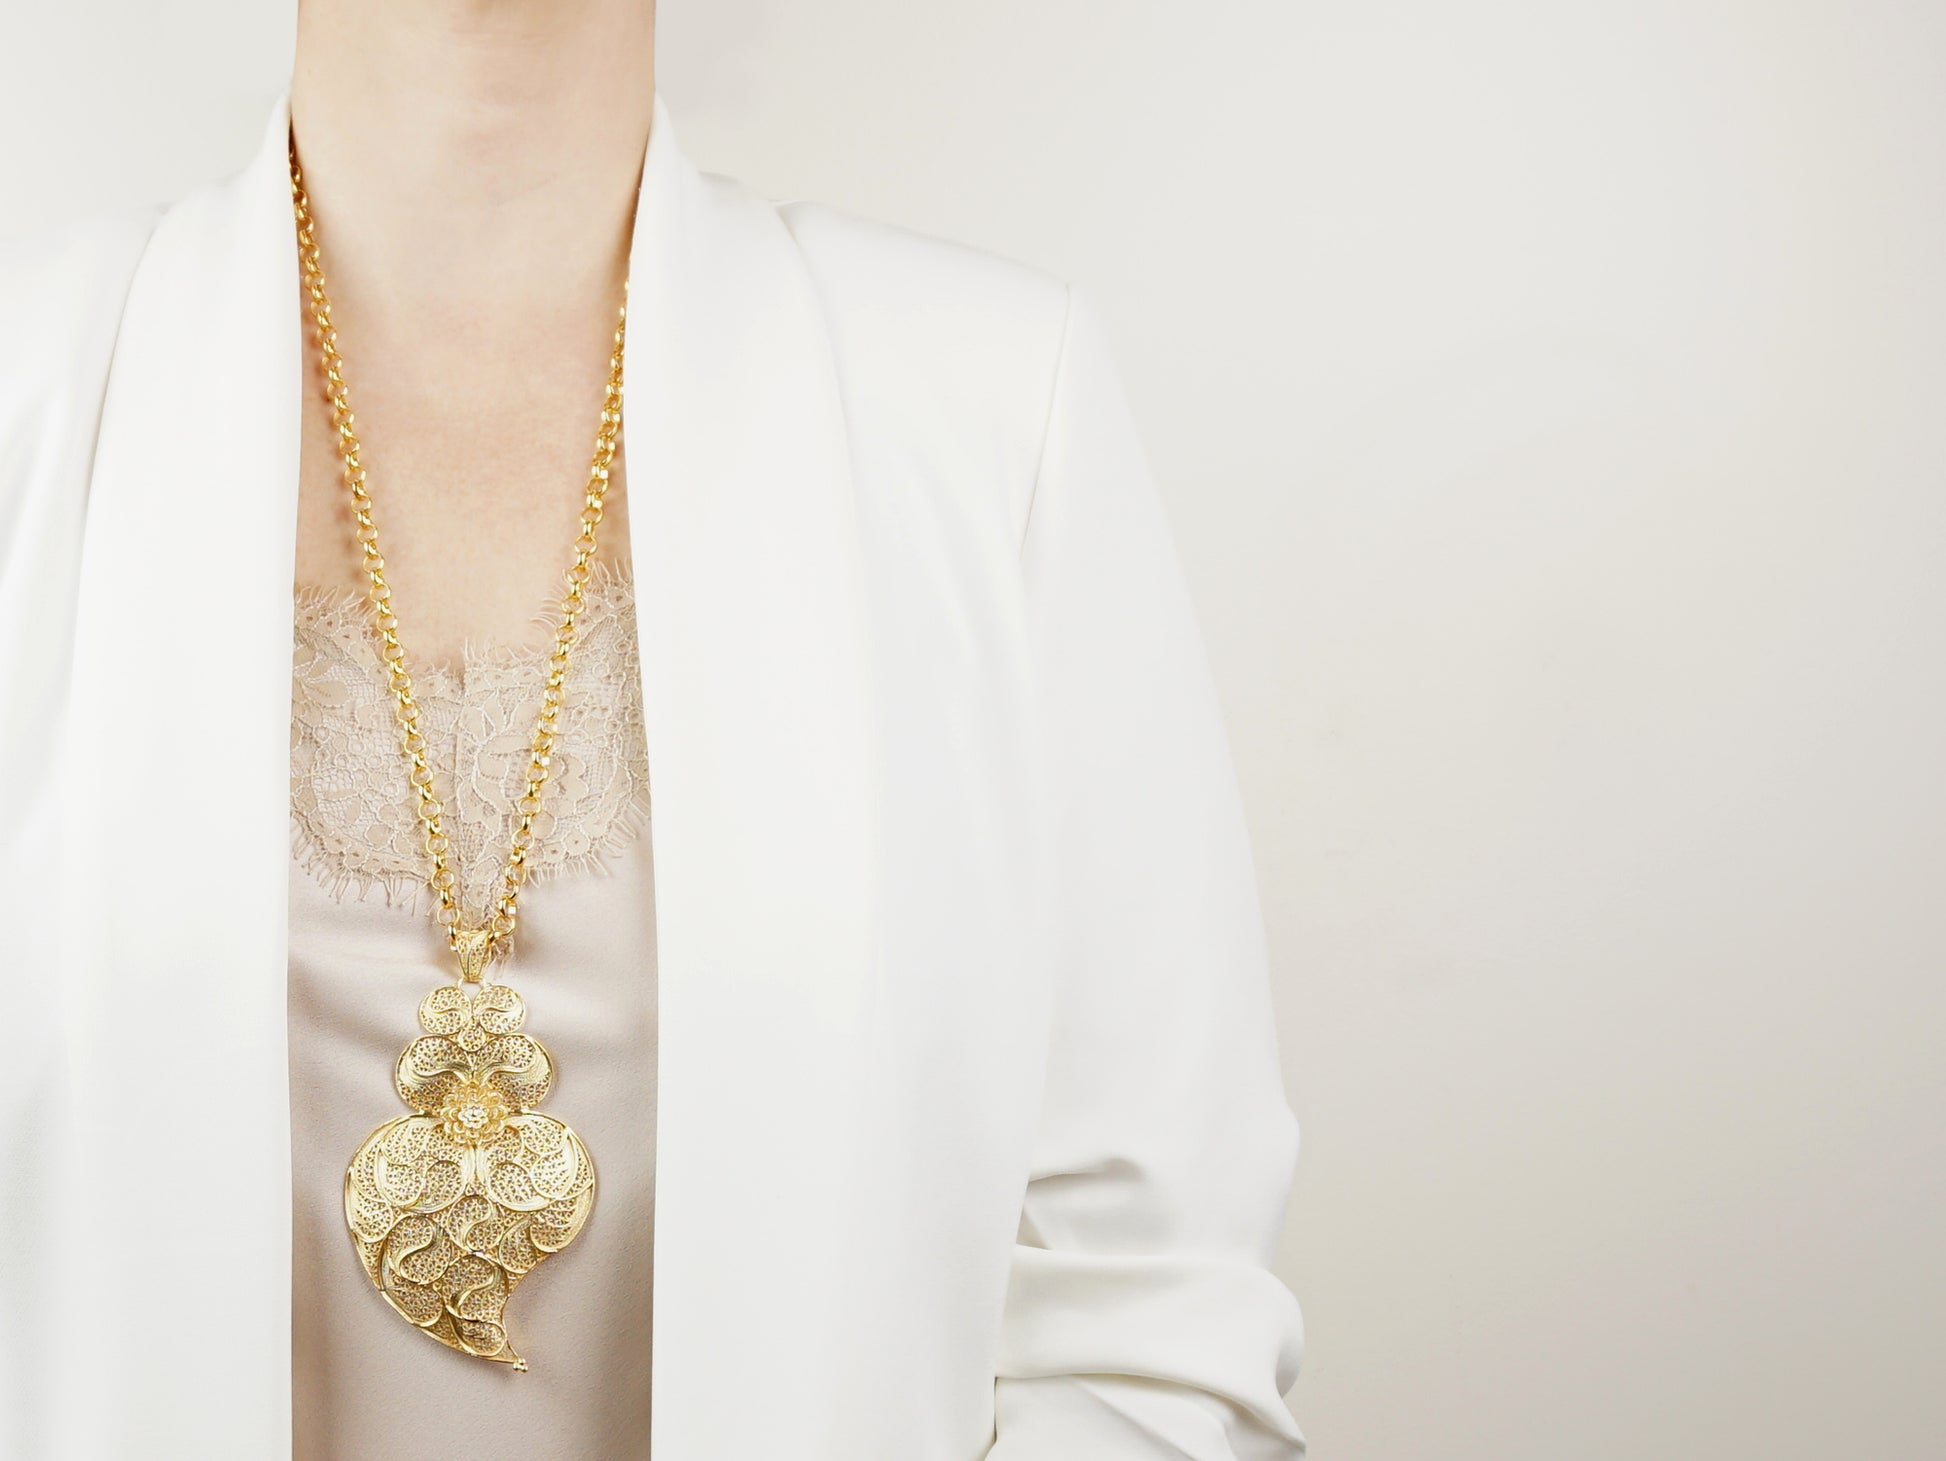 Cordão com Coração Minhoto Extra Grande, Filigrana Portuguesa, Prata de Lei 925 Dourada - Mulher a usar colar